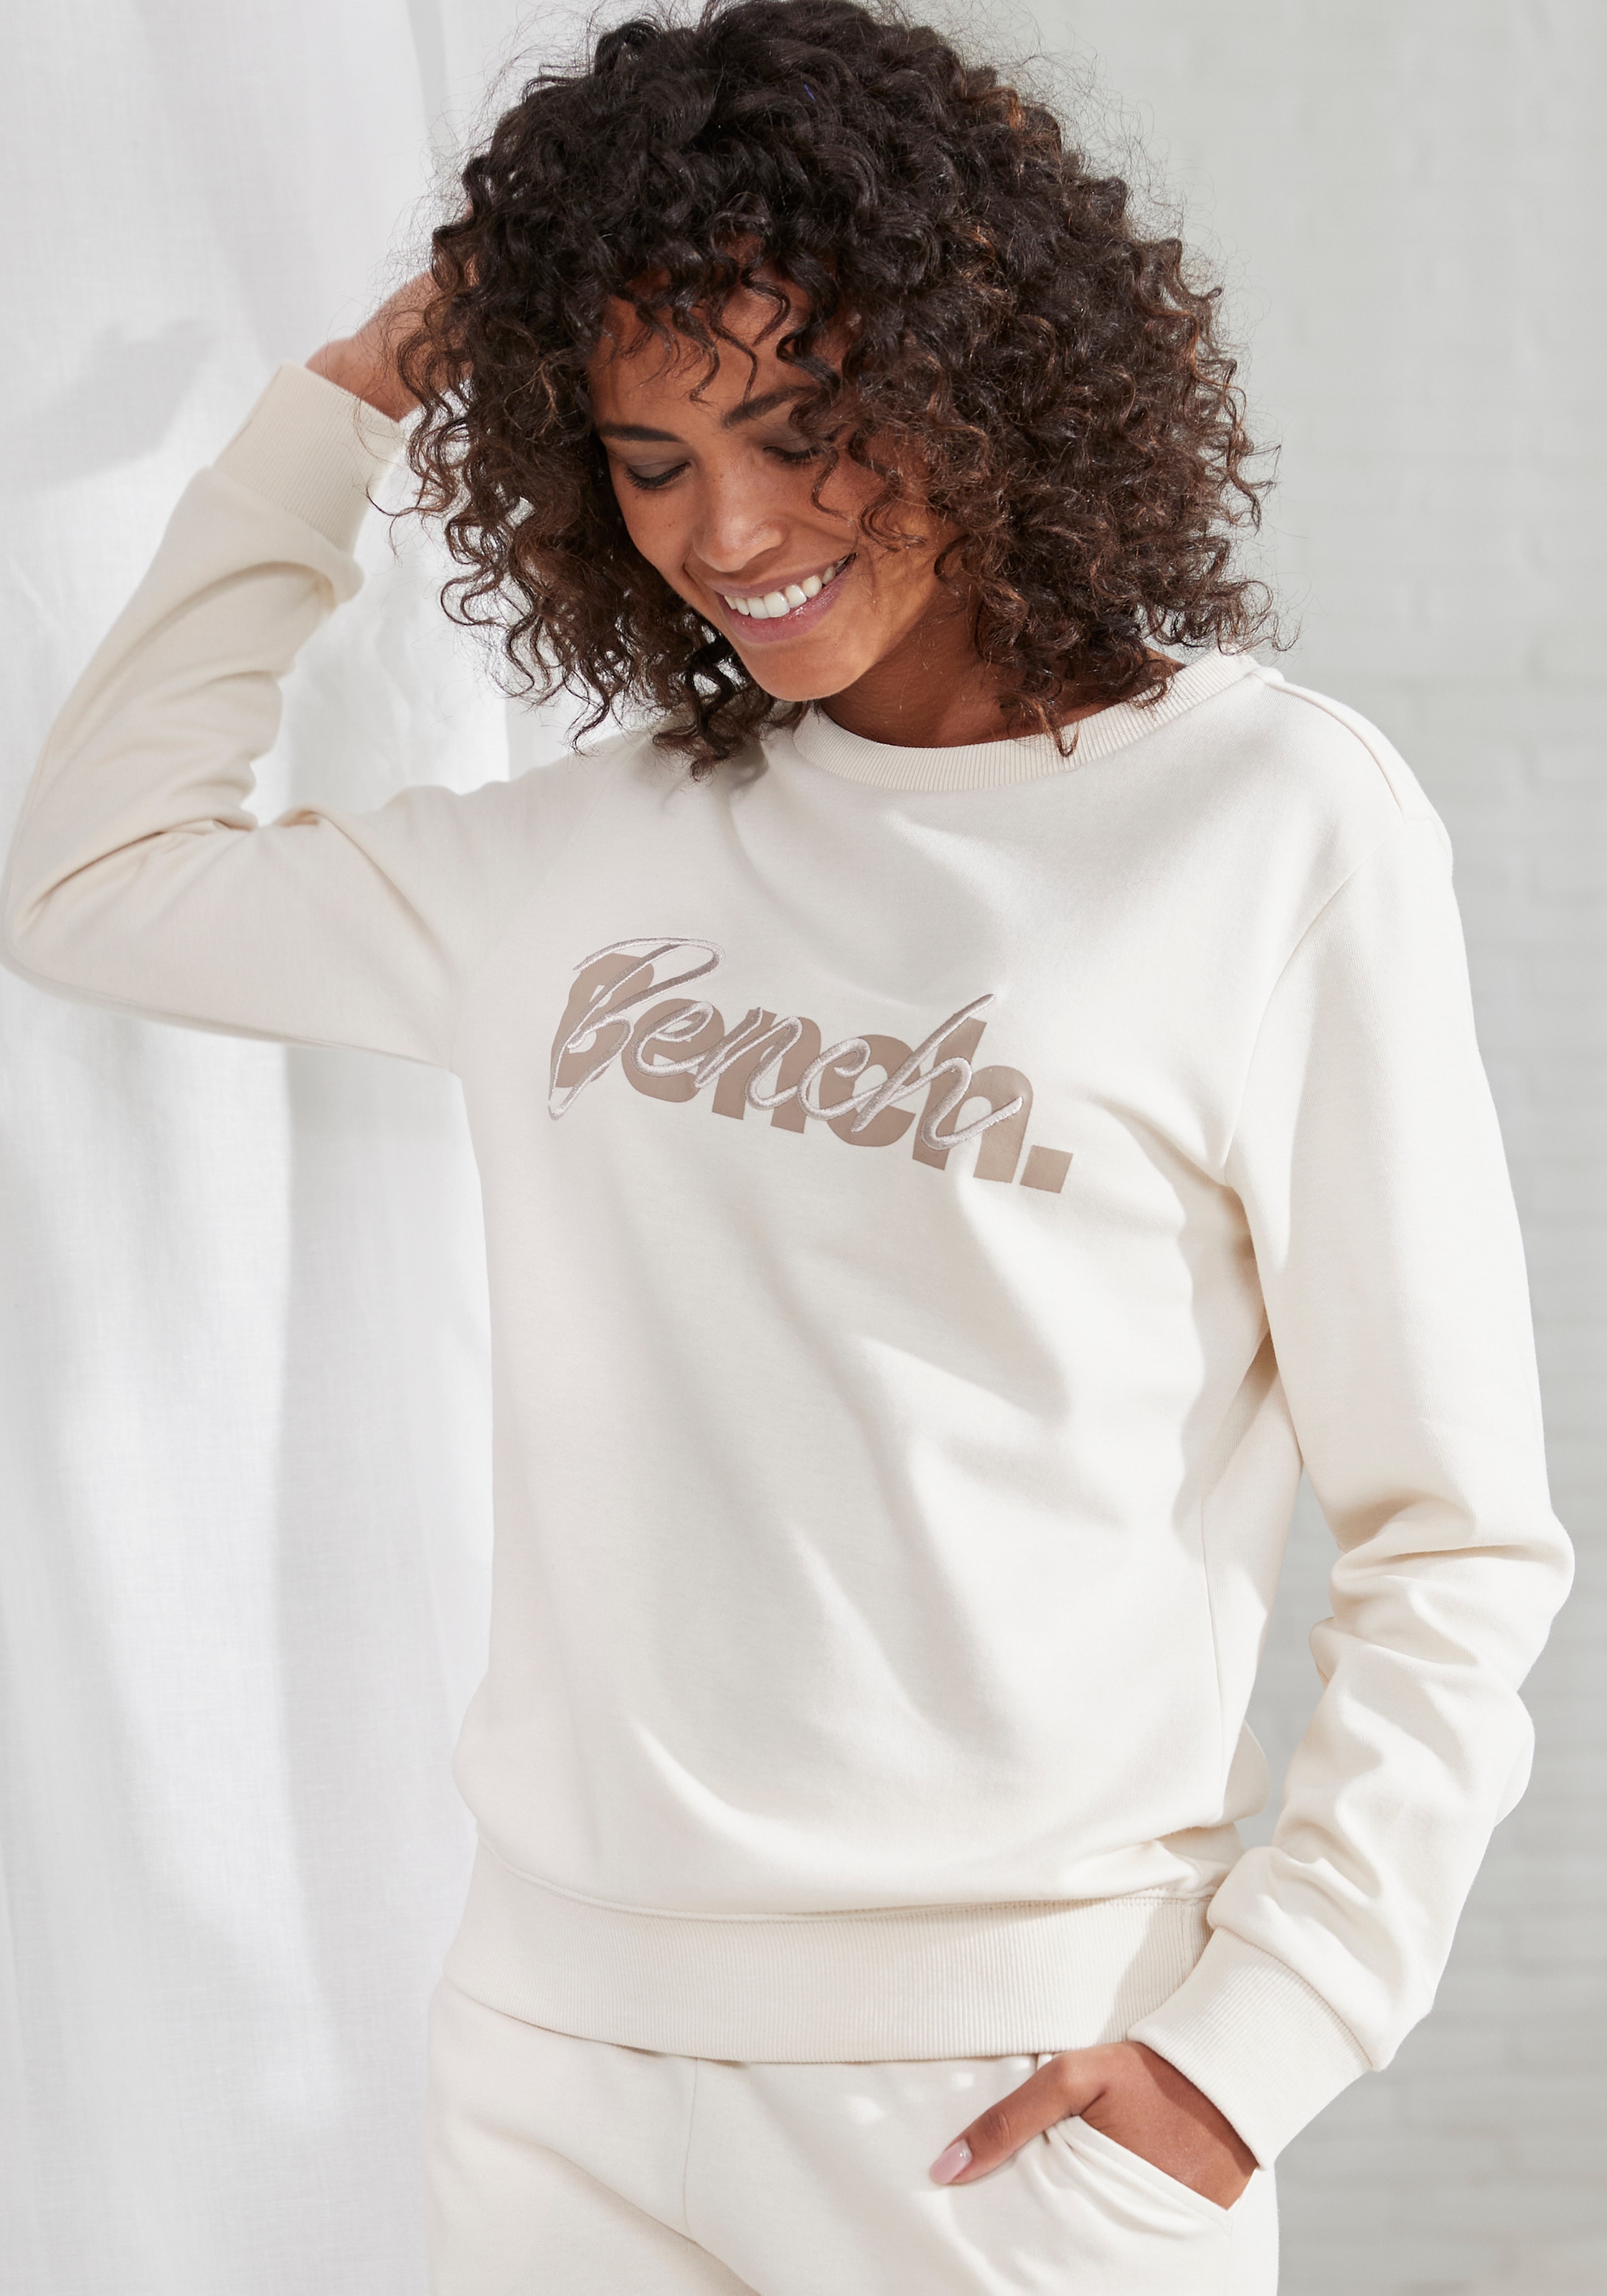 ♕ Bench. Loungewear Sweatshirt, mit Logodruck und Stickerei, Loungeanzug  versandkostenfrei bestellen